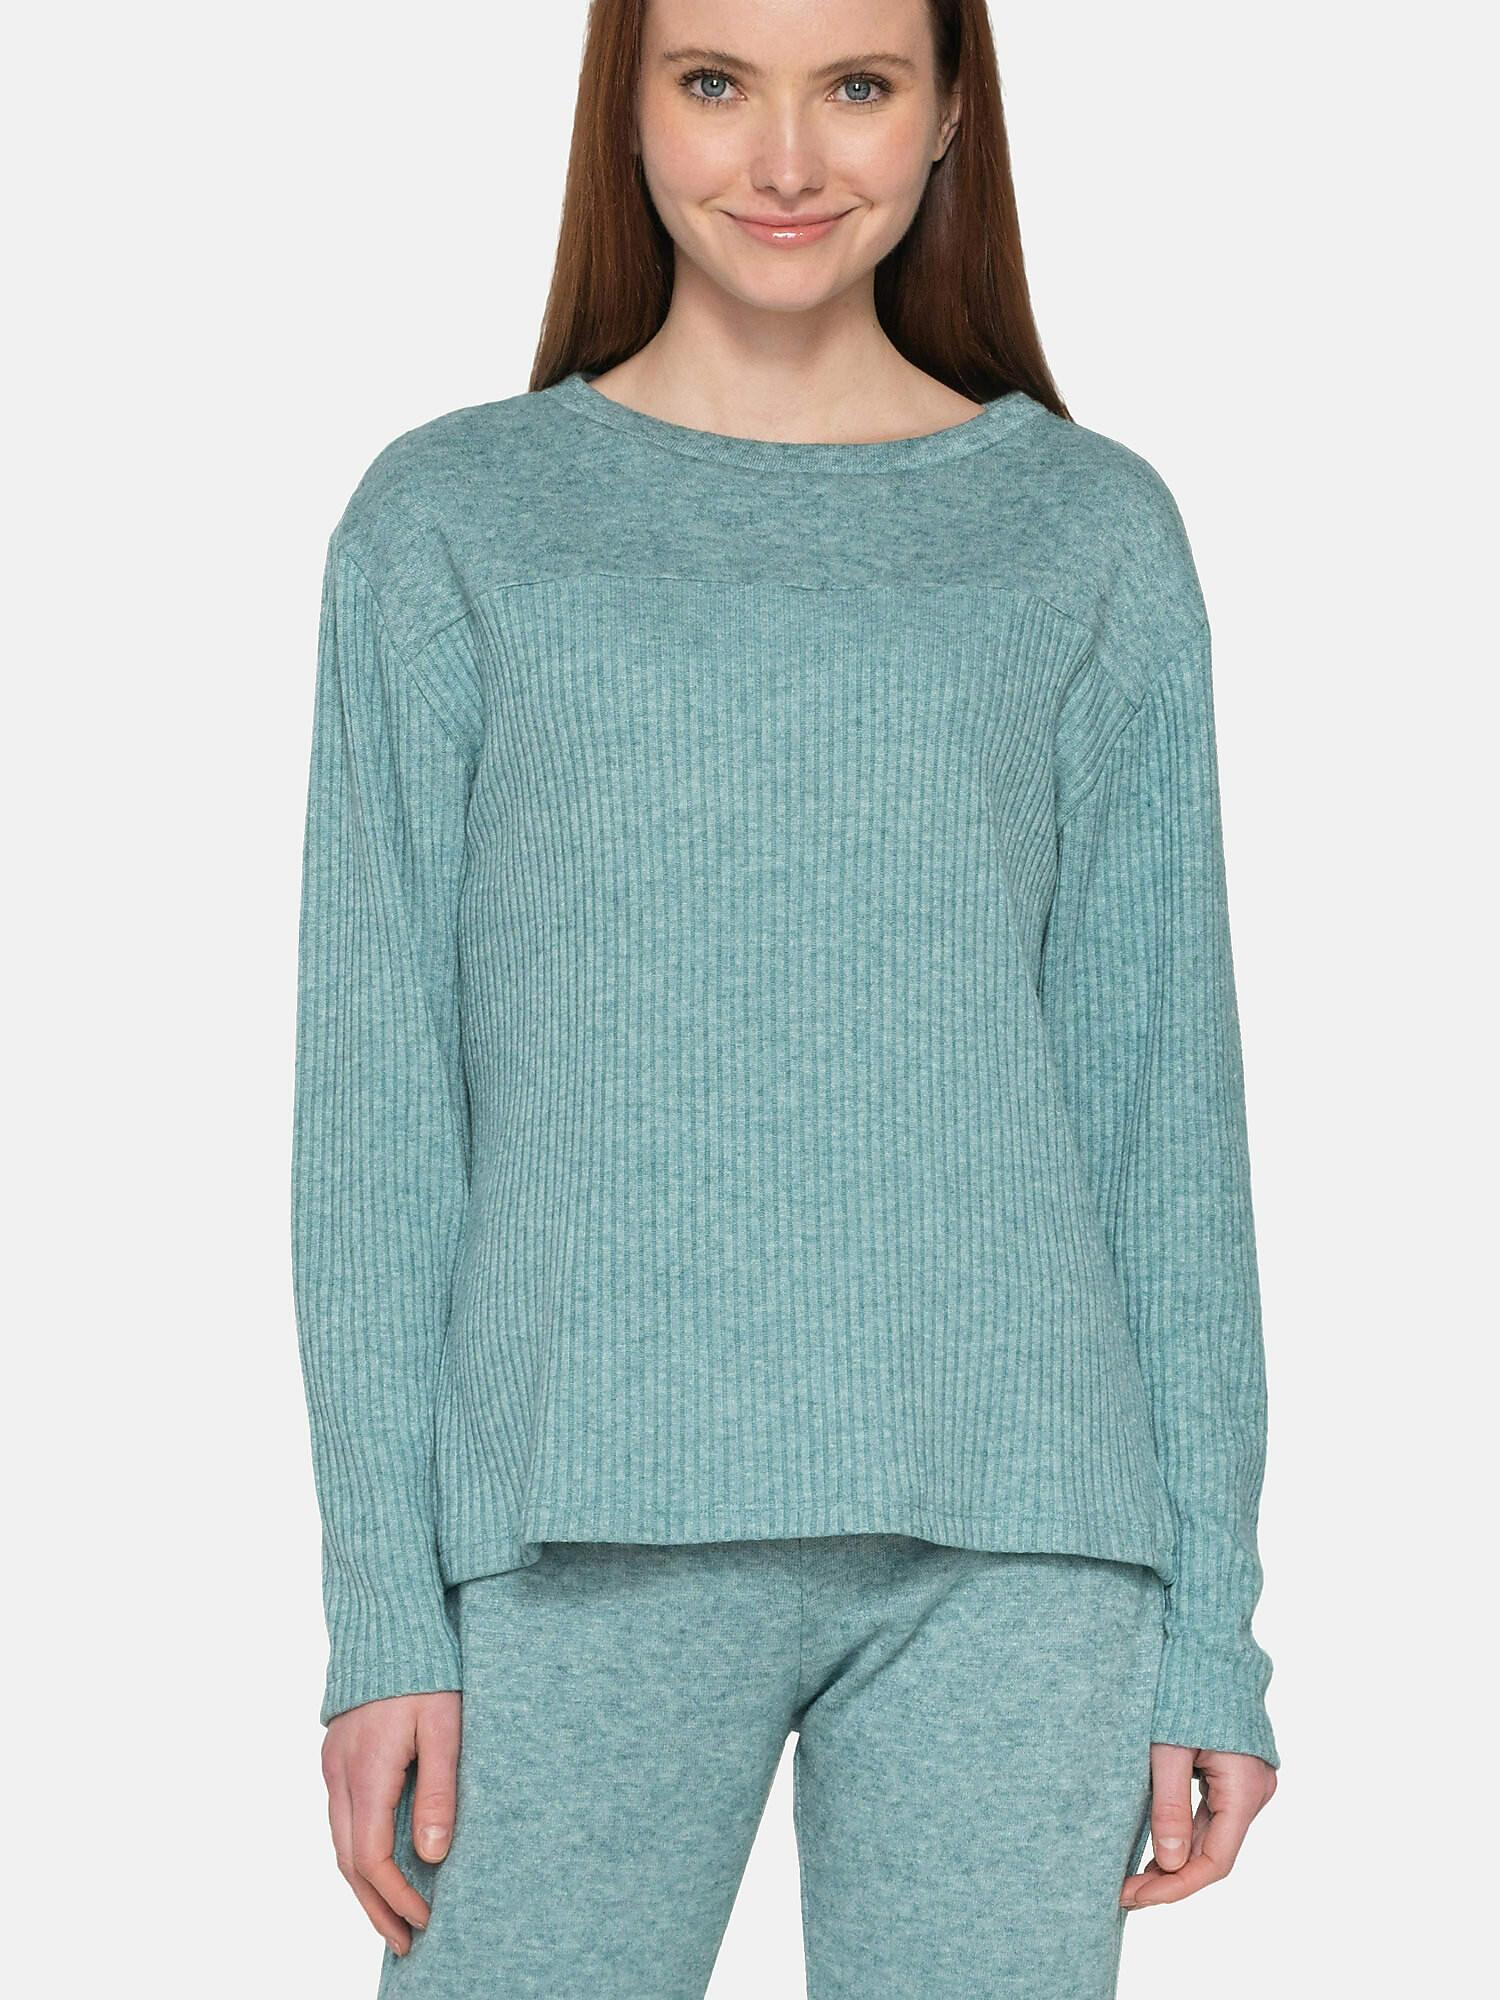 Sweatshirt Connected Damen Grün M von Luna